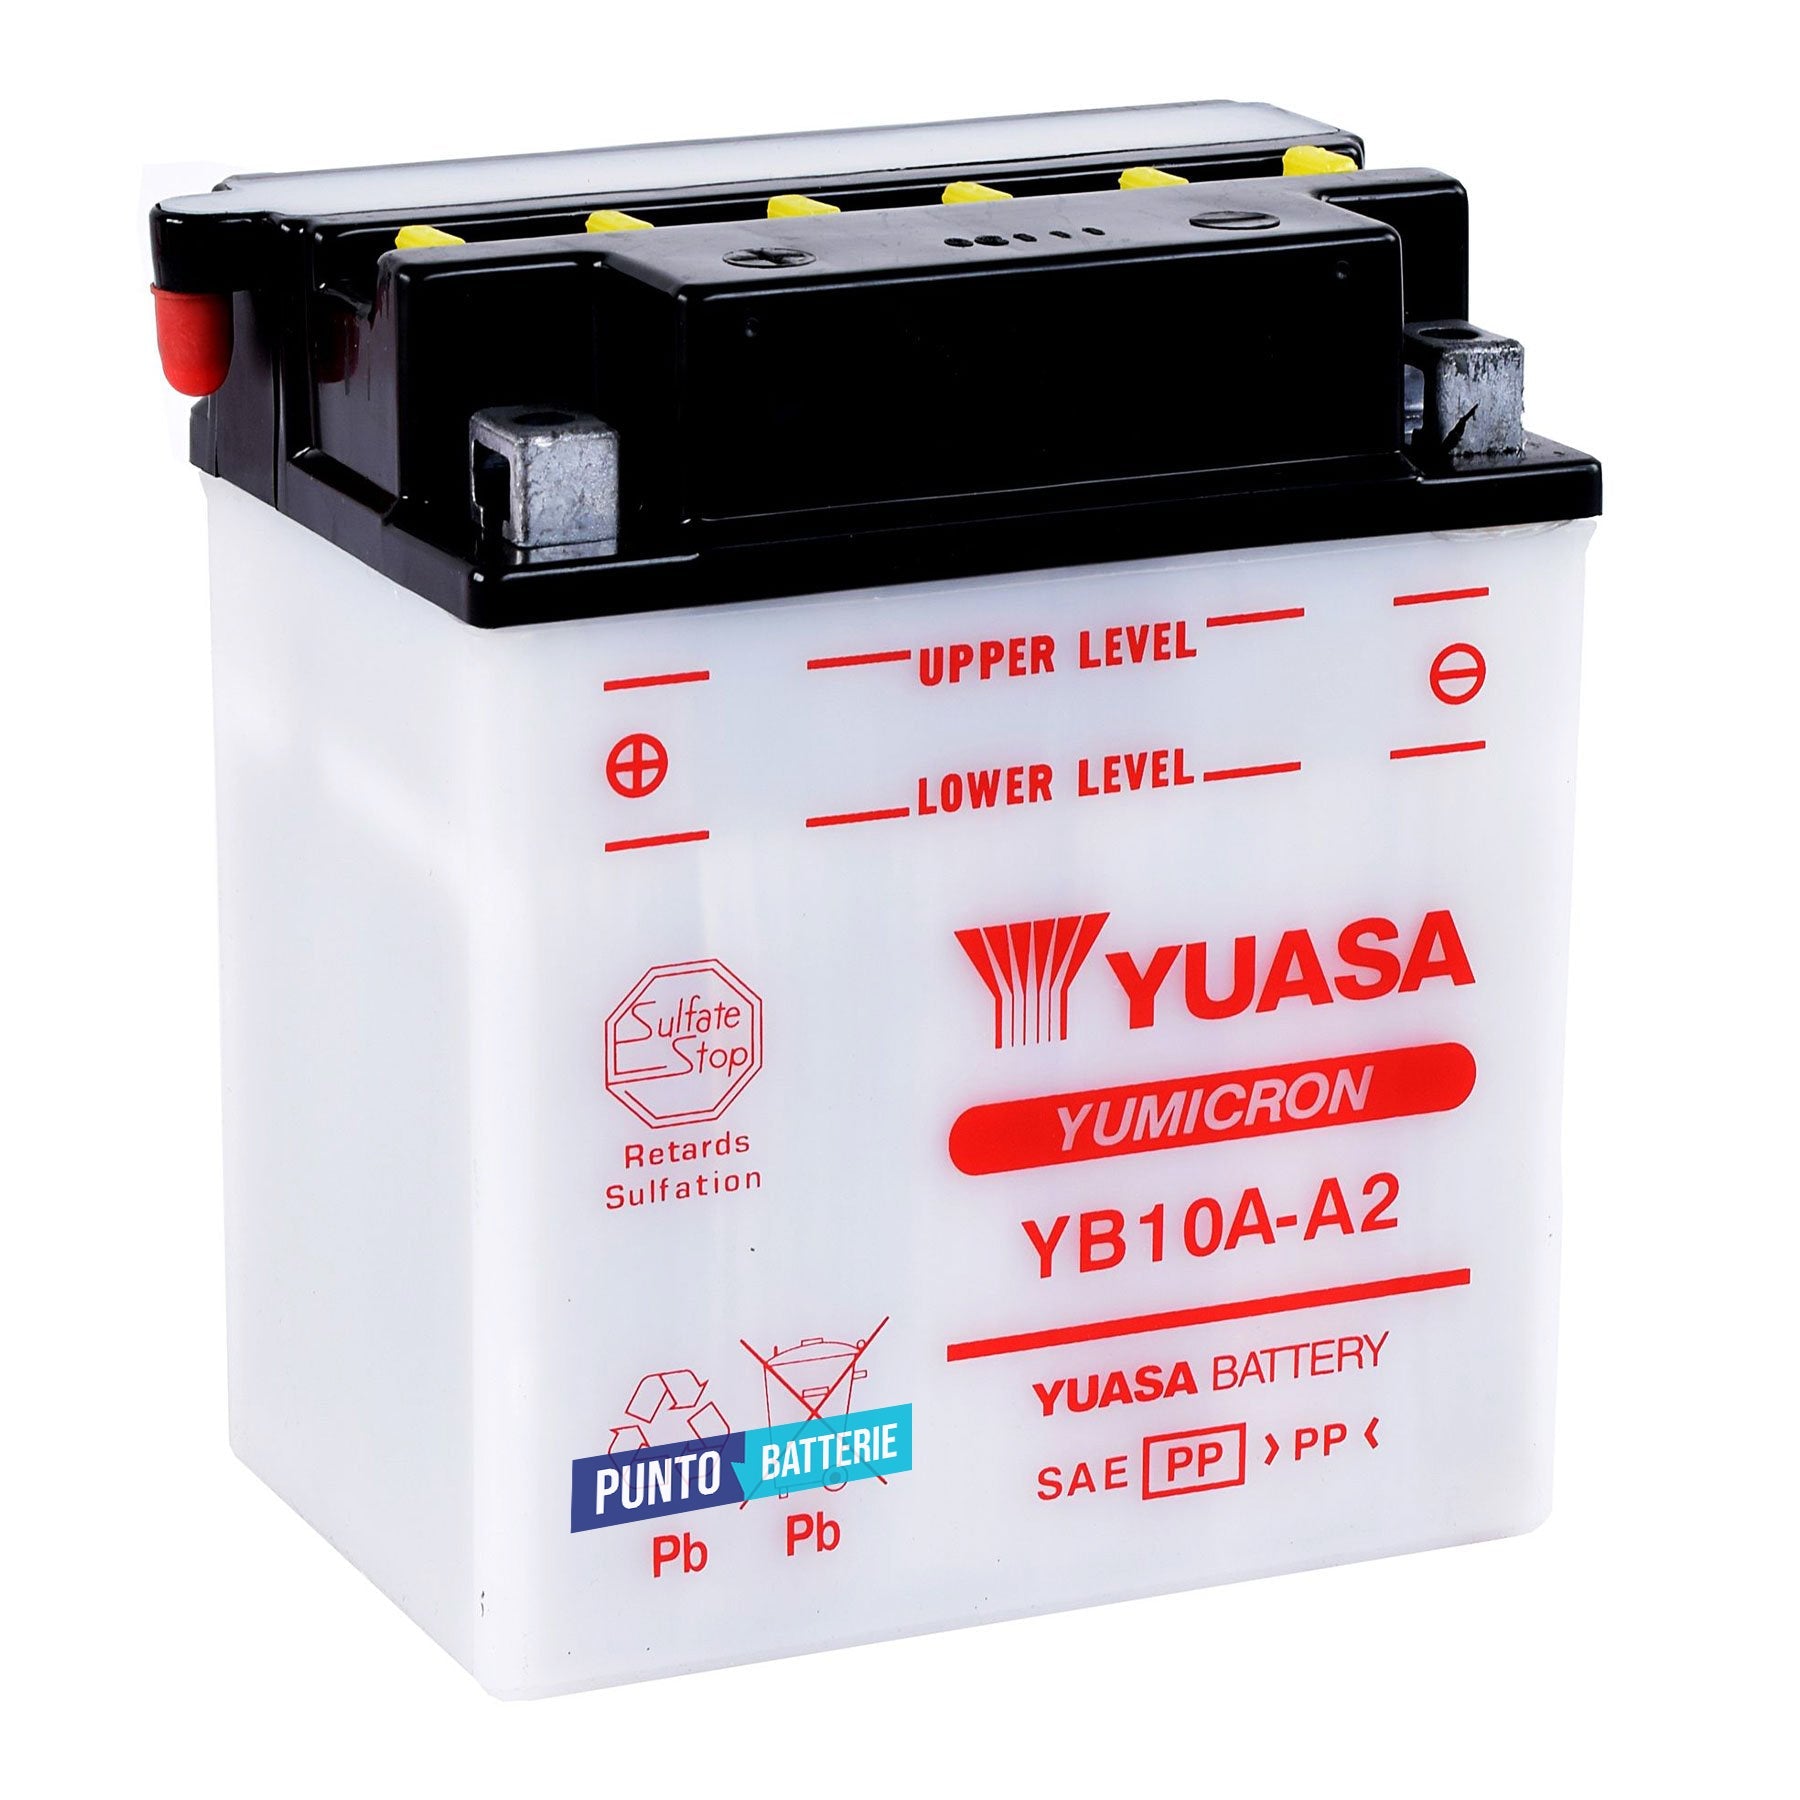 Batteria originale Yuasa YuMicron YB10A-A2, dimensioni 135 x 90 x 155, polo positivo a sinistra, 12 volt, 11 amperora, 120 ampere. Batteria per moto, scooter e powersport.